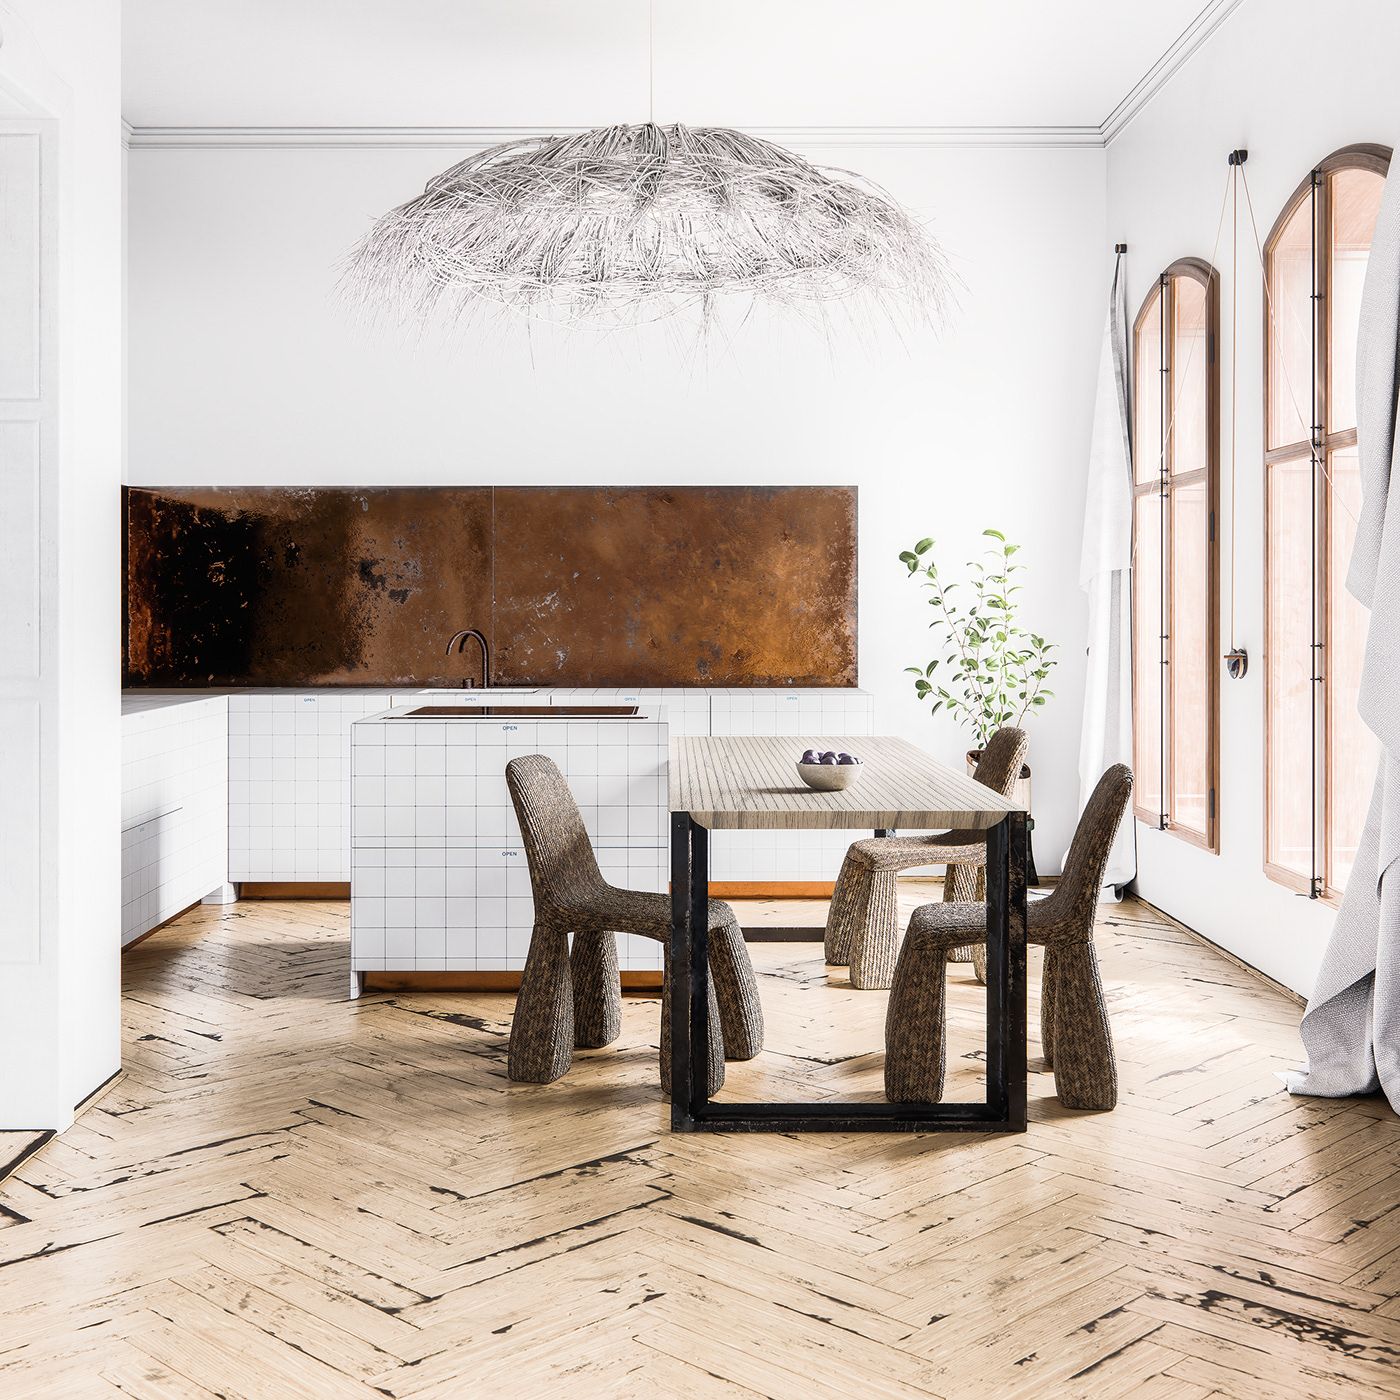 architecture archviz bright design Interior kitchen minimalist modern Render White